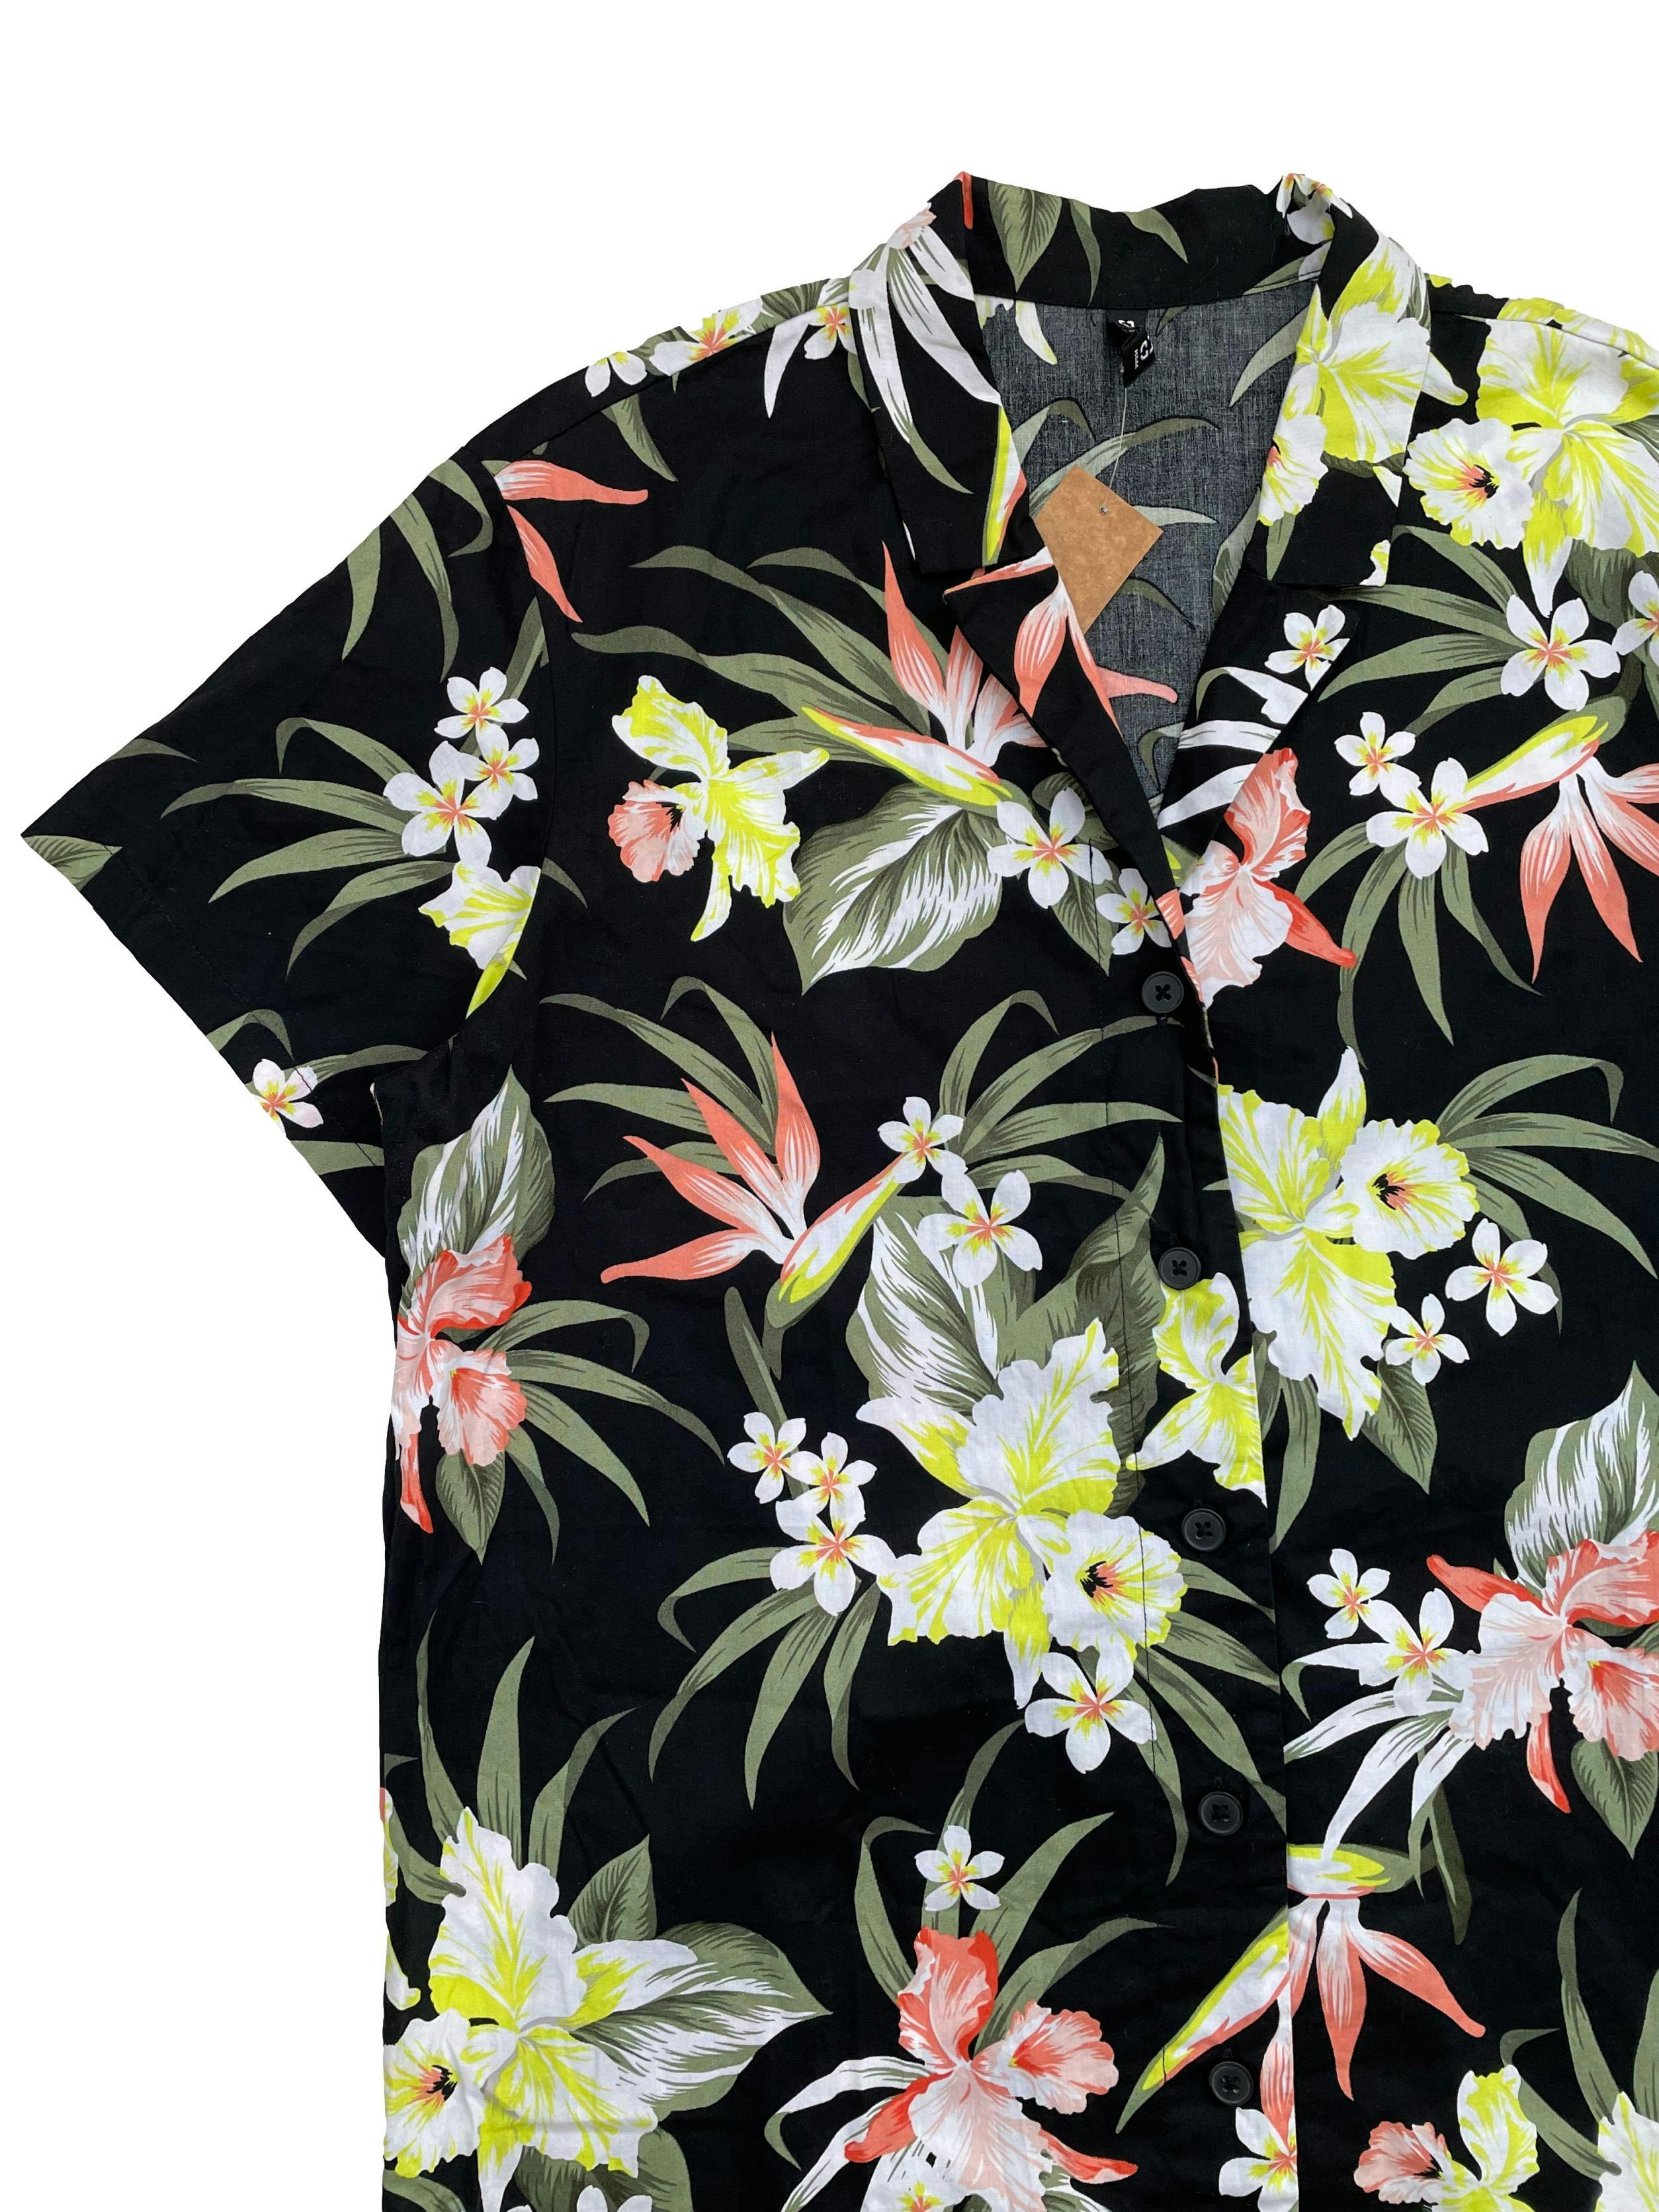 Camisón H&M negro con estampado de flores, 100% algodón camisa, botones delanteros, corte suelto. Busto: 105cm, Largo: 81cm